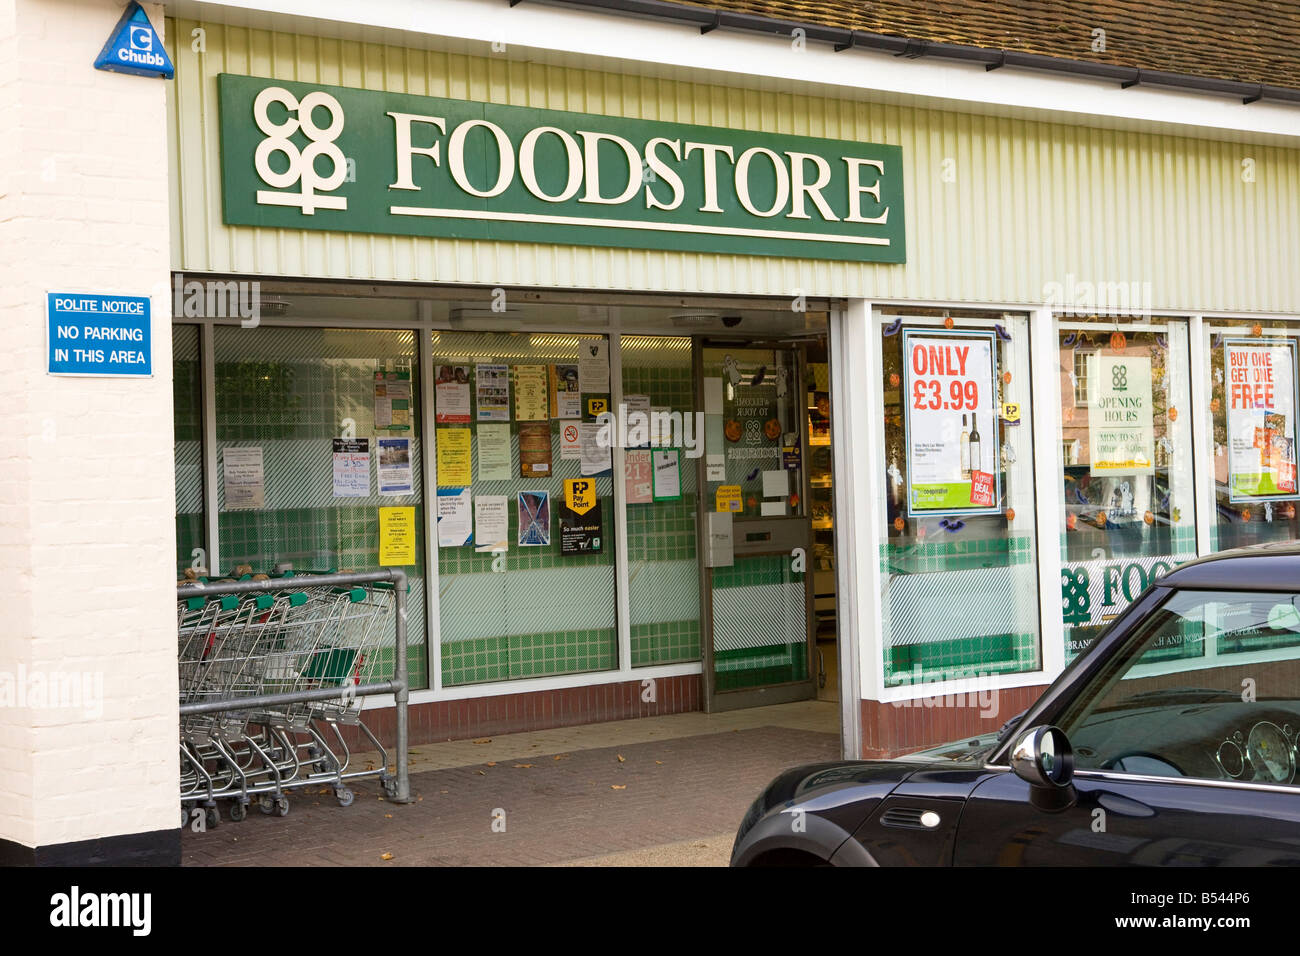 co op foodstore in Suffolk, UK Stock Photo